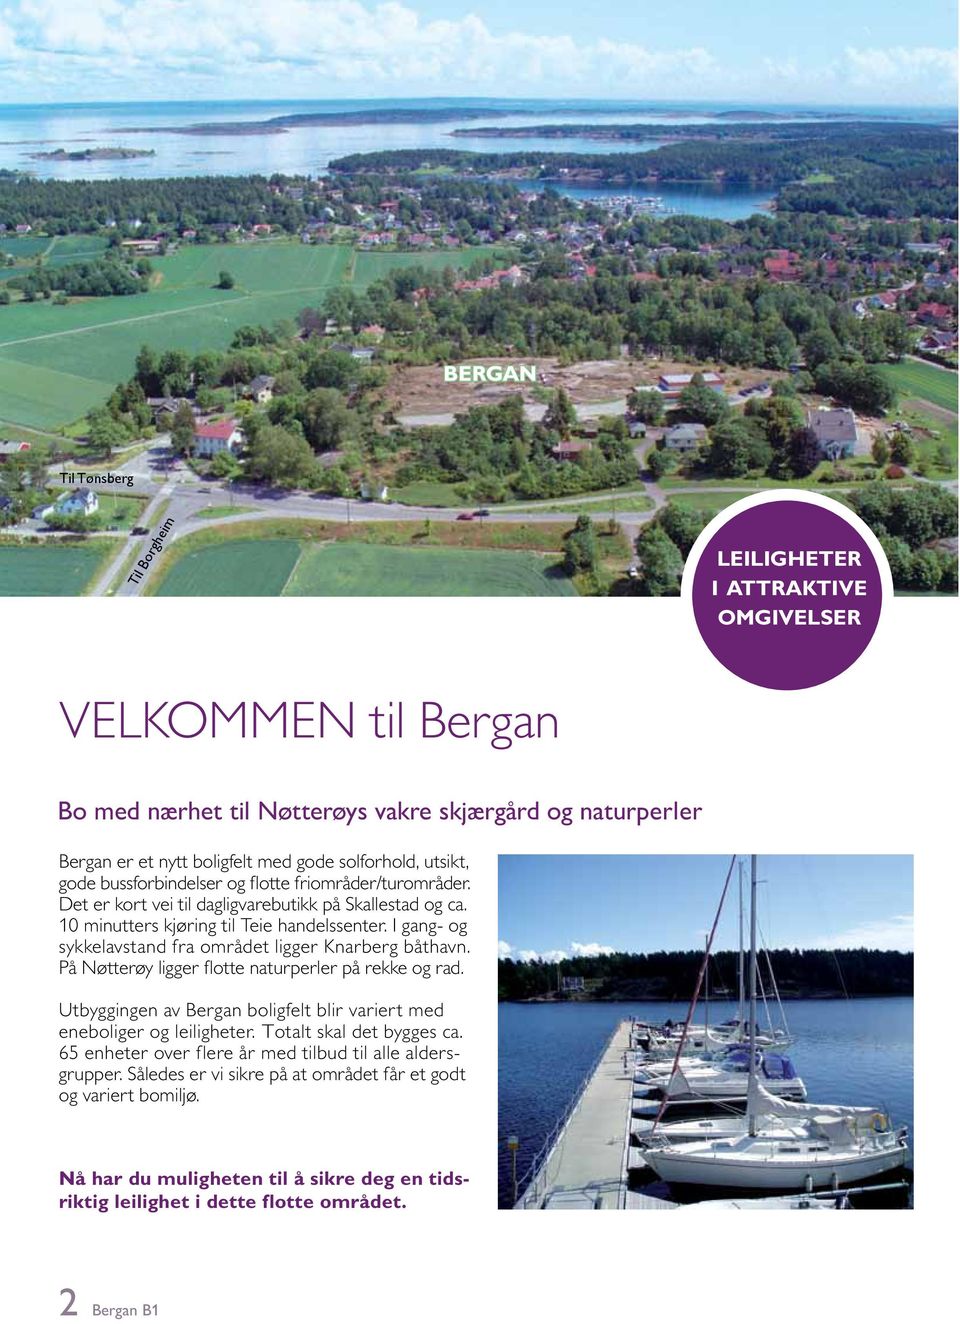 I gang- og sykkelavstand fra området ligger Knarberg båthavn. På Nøtterøy ligger flotte naturperler på rekke og rad. Utbyggingen av Bergan boligfelt blir variert med eneboliger og leiligheter.